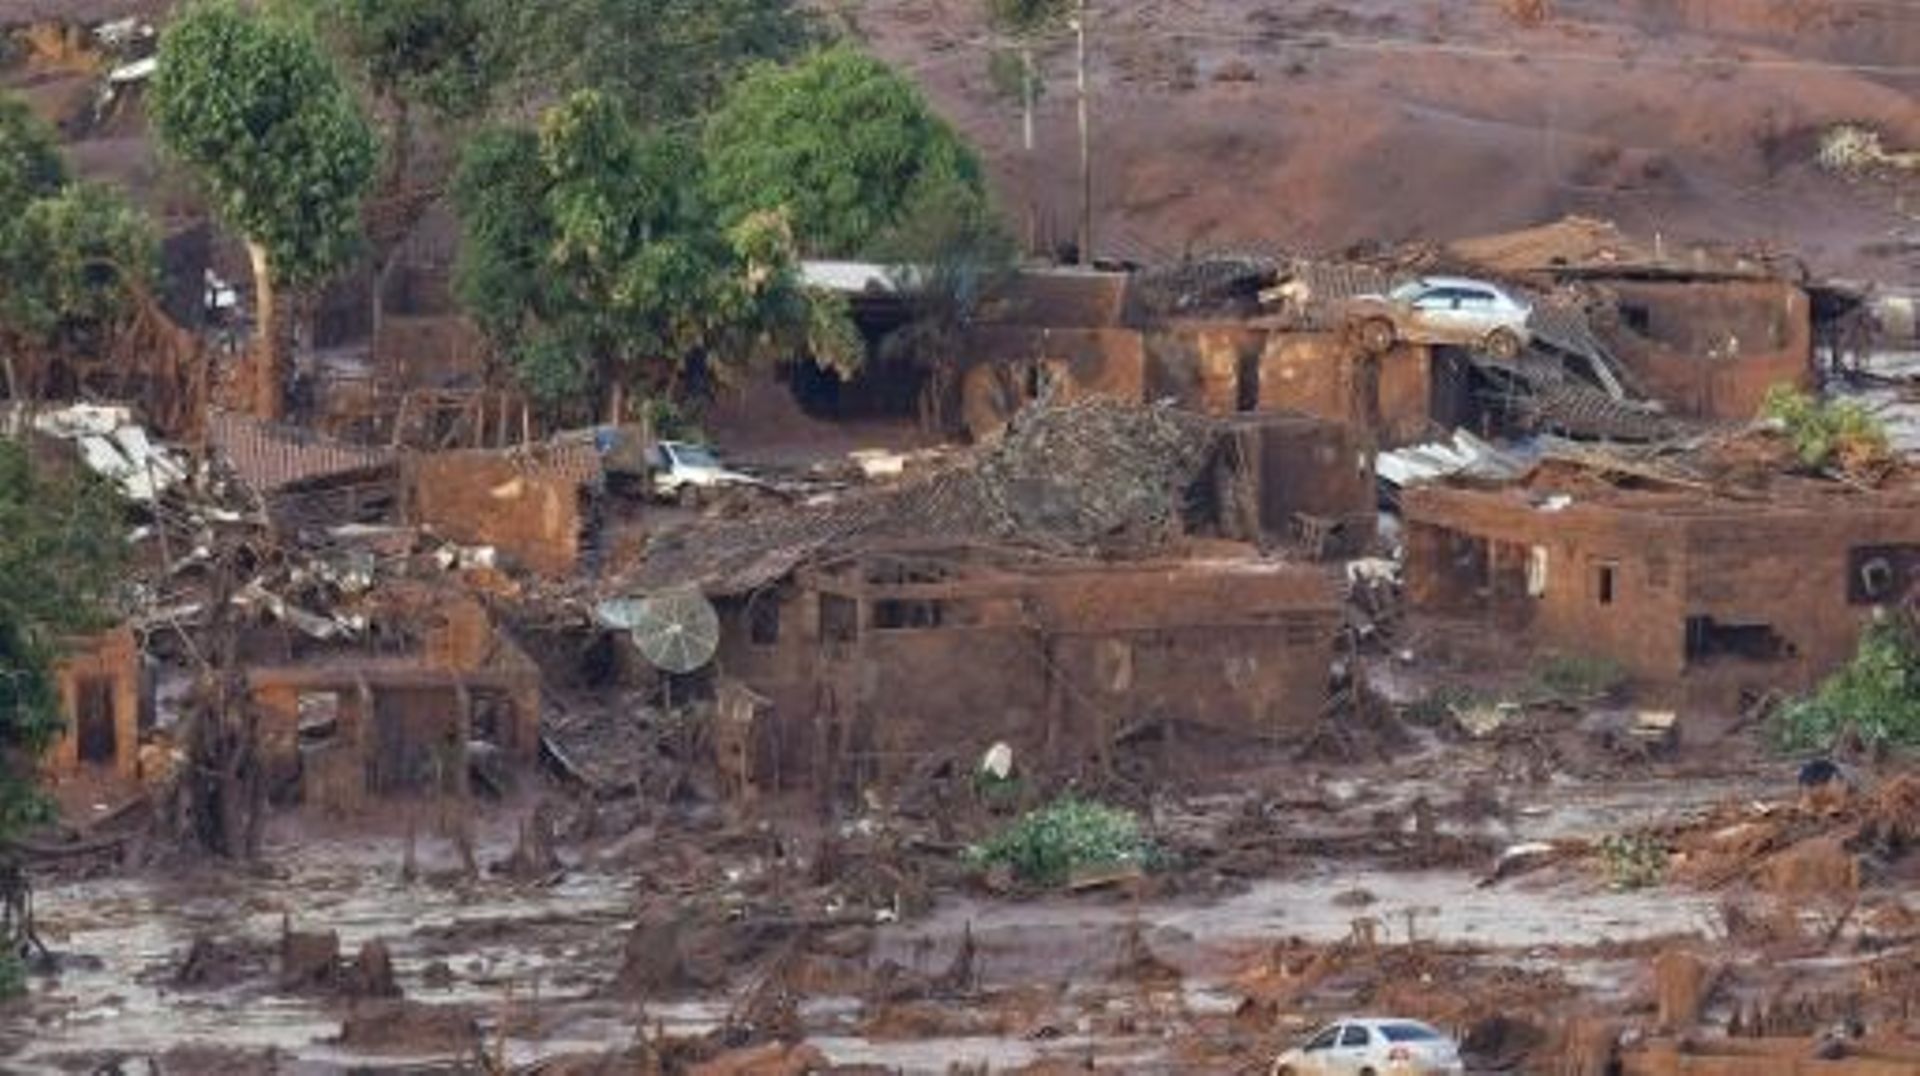 Le village de Bento Rodrigues touché par un tsunami de déchets miniers boueux après la rupture d'un barrage de la compagnie Samarco, le 6 novembre 2015 au Brésil